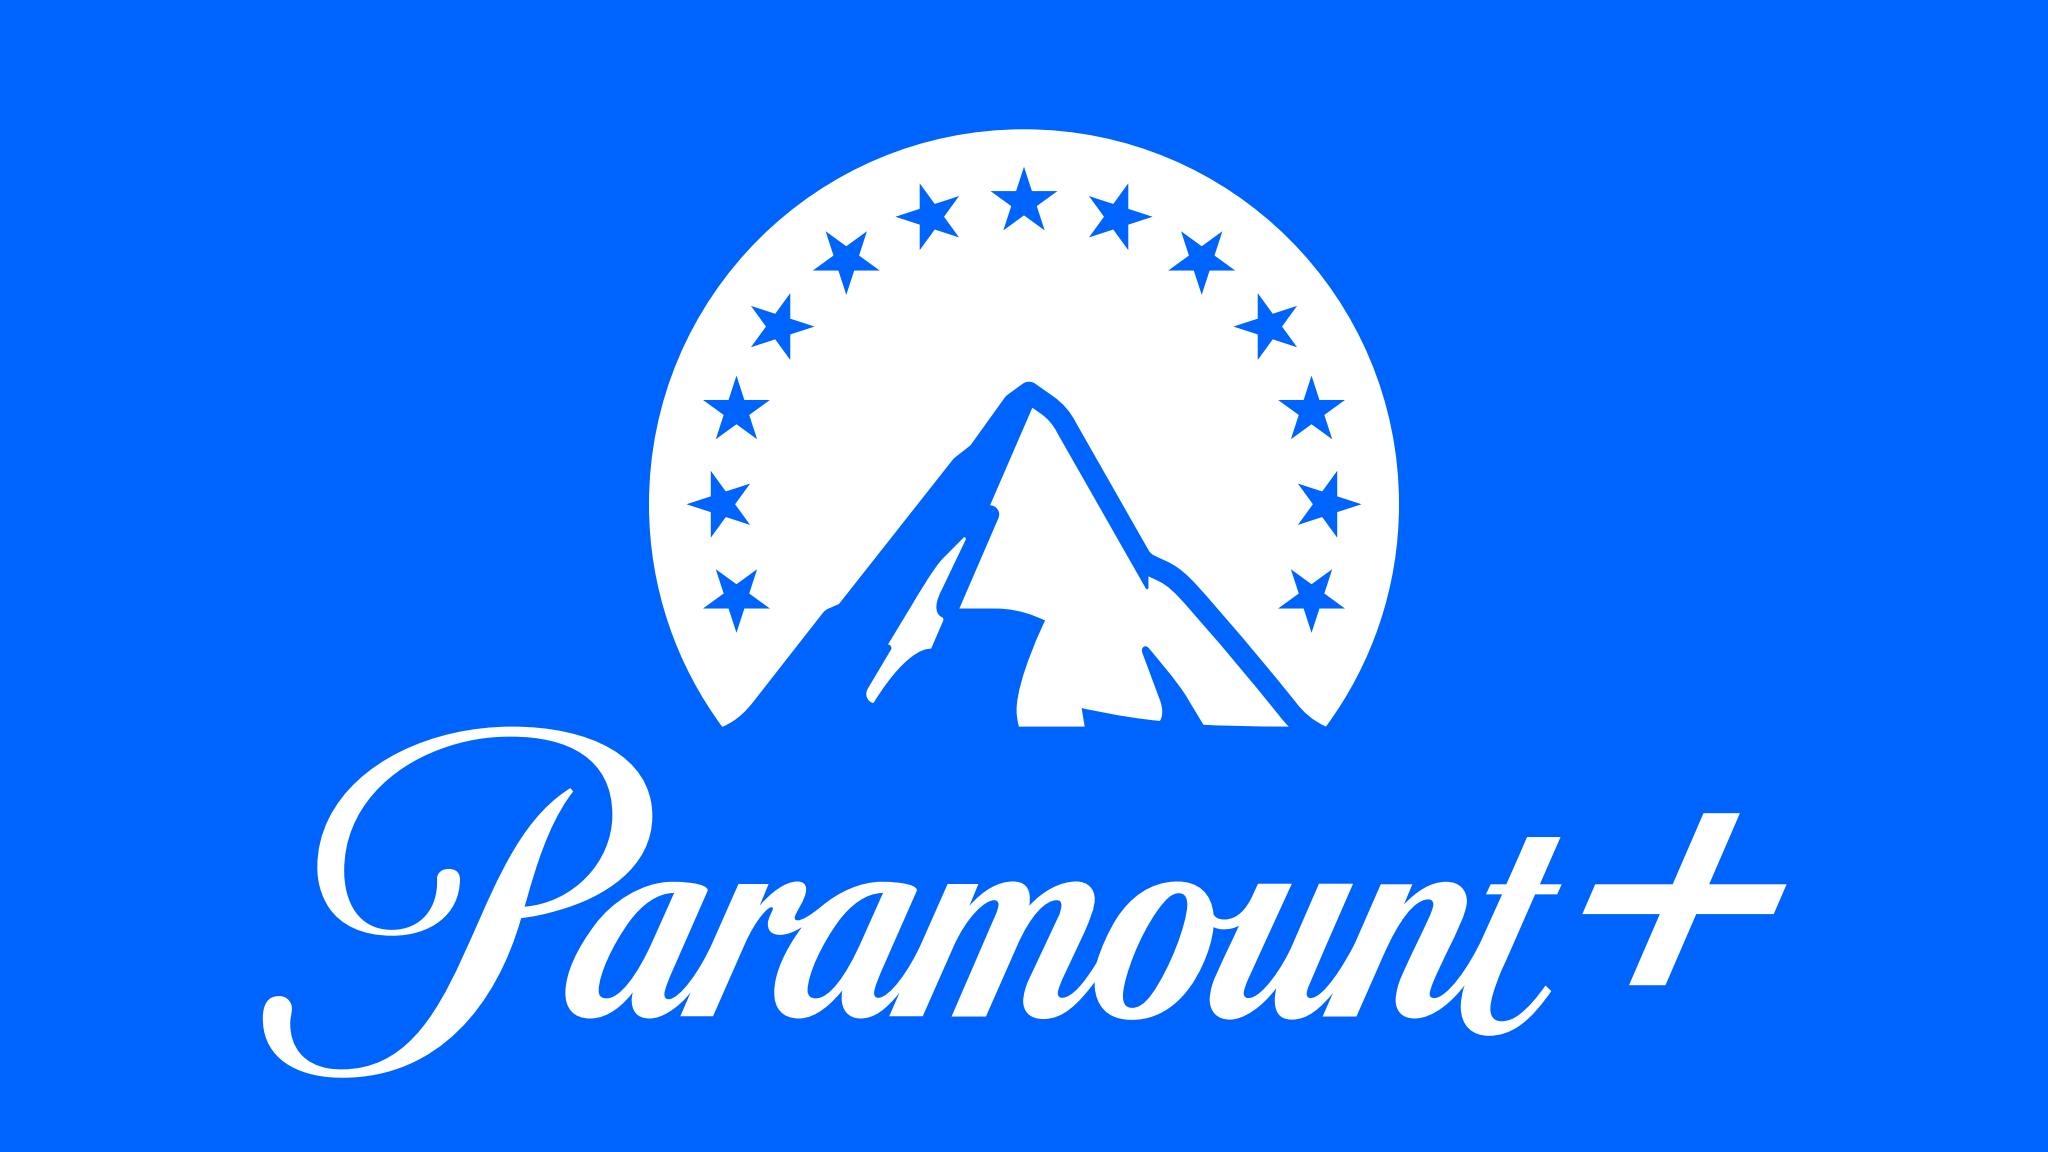 blaa paramount logo